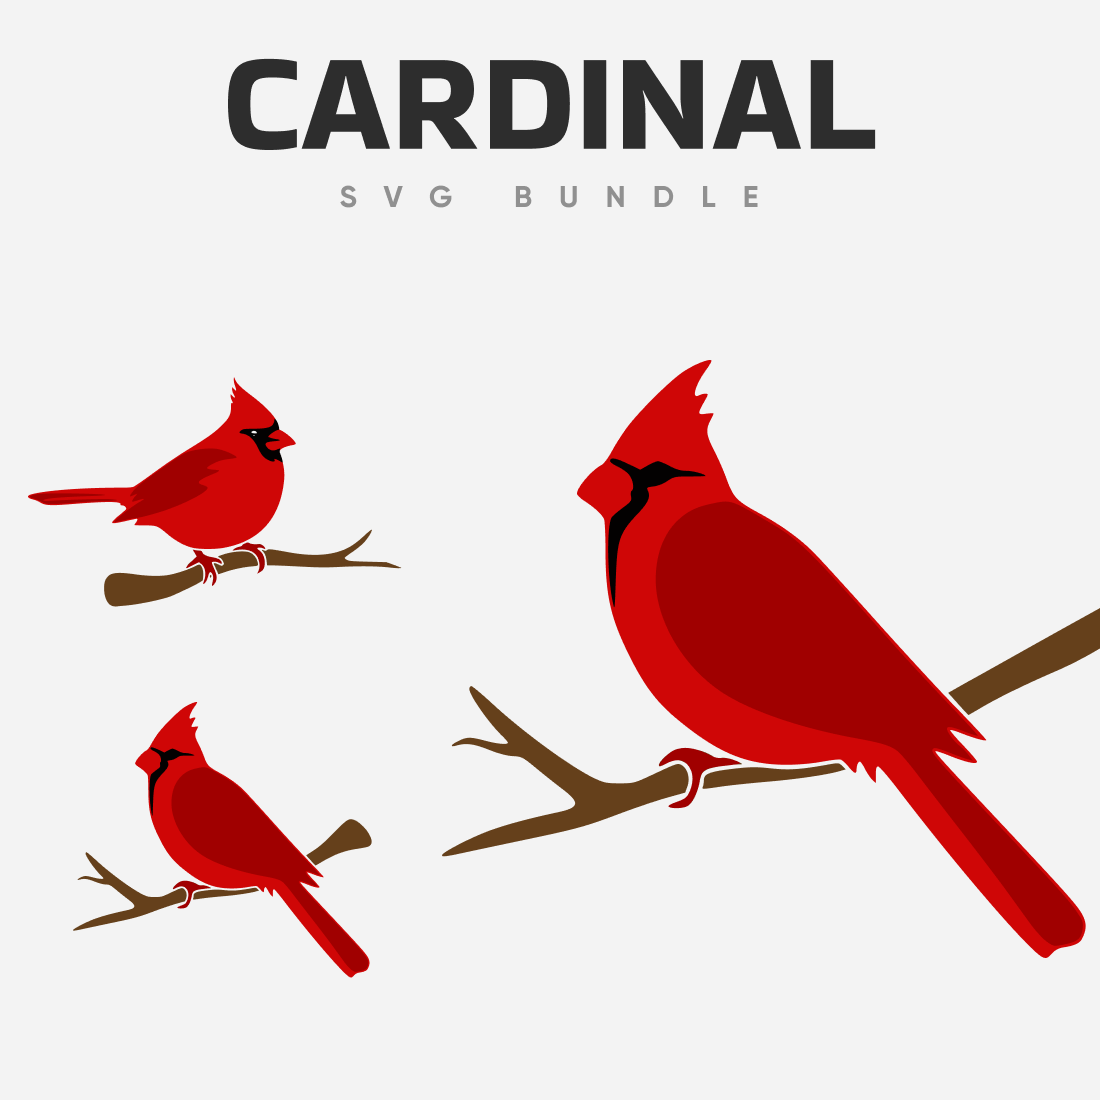 Red cardinal SVG bundle.